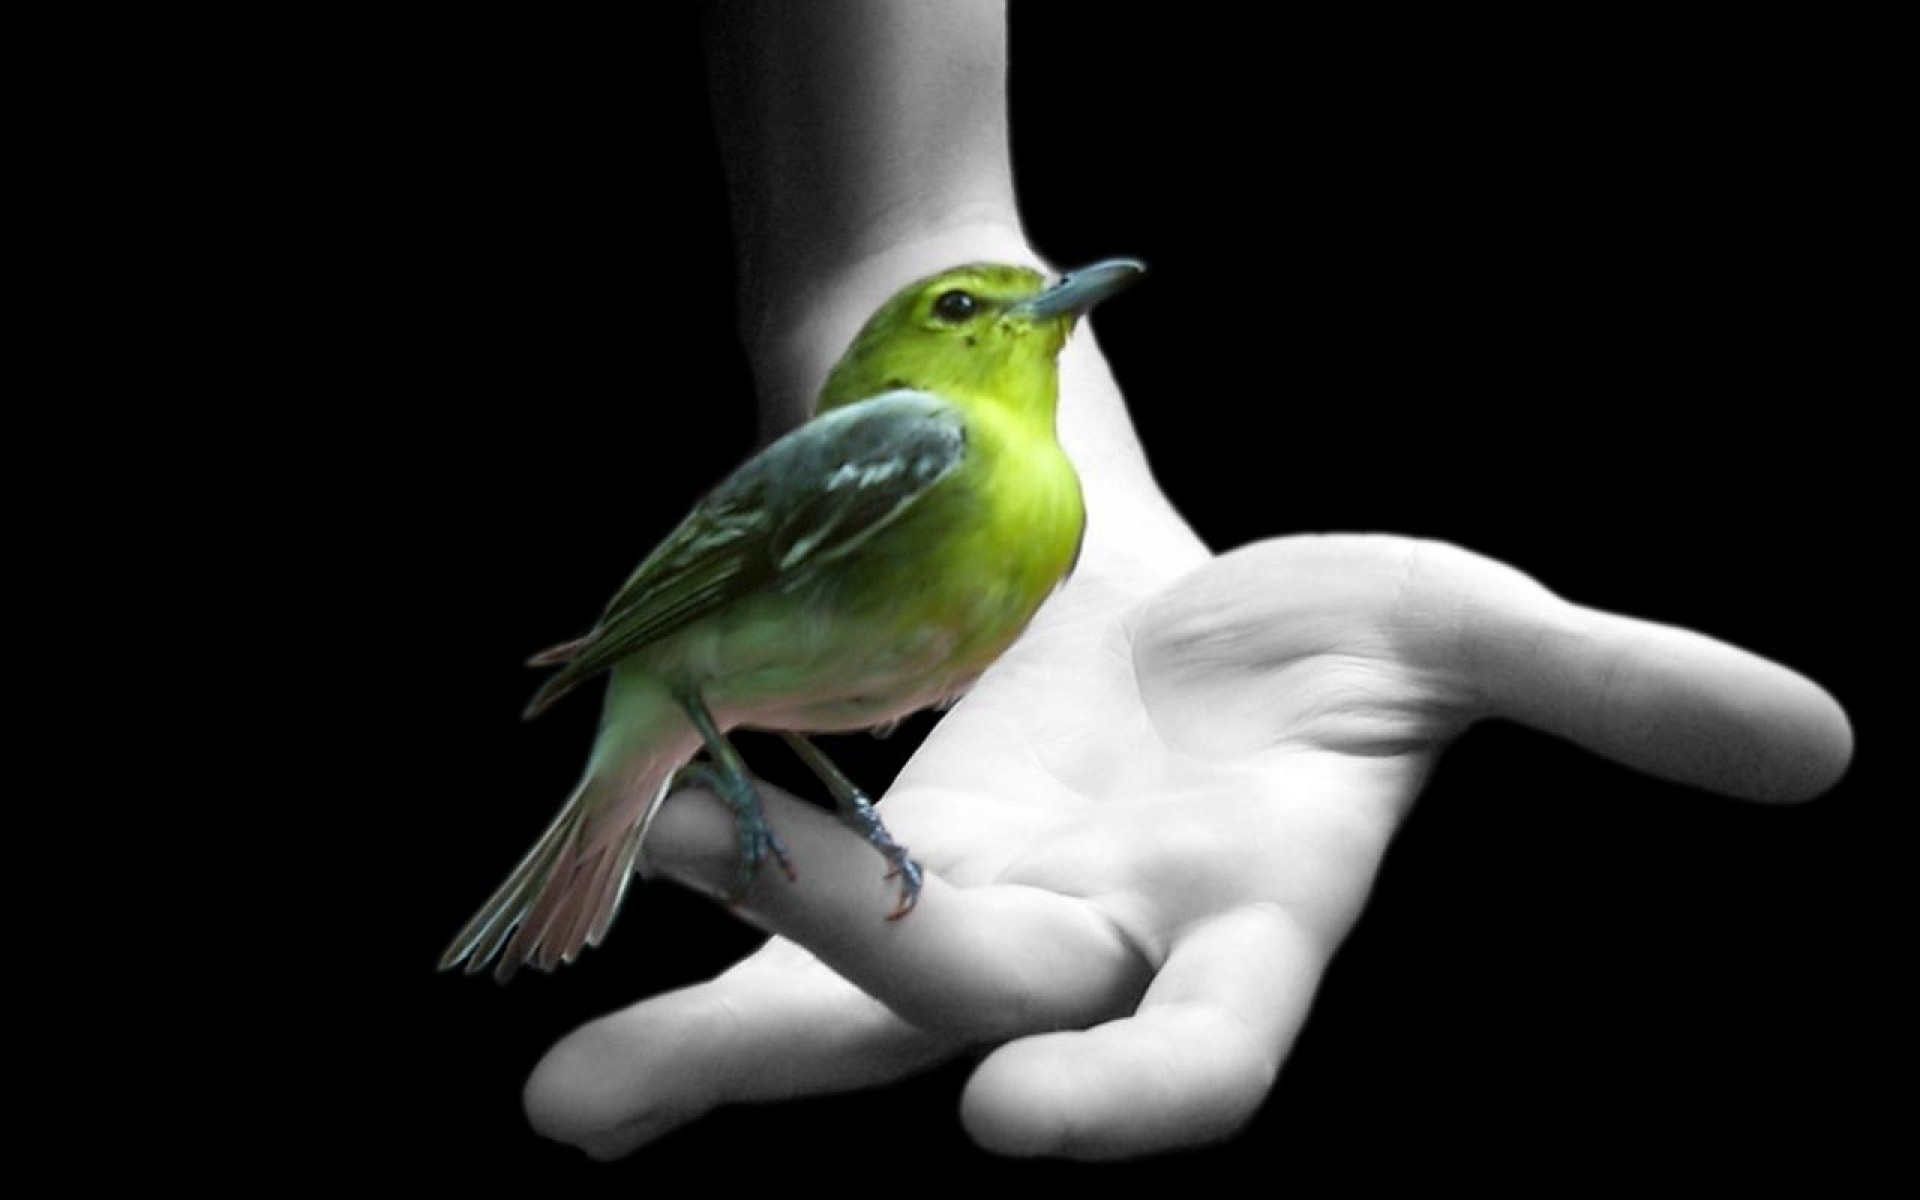 緑の鳥の壁紙,鳥,羽,止まった鳥,写真撮影,手